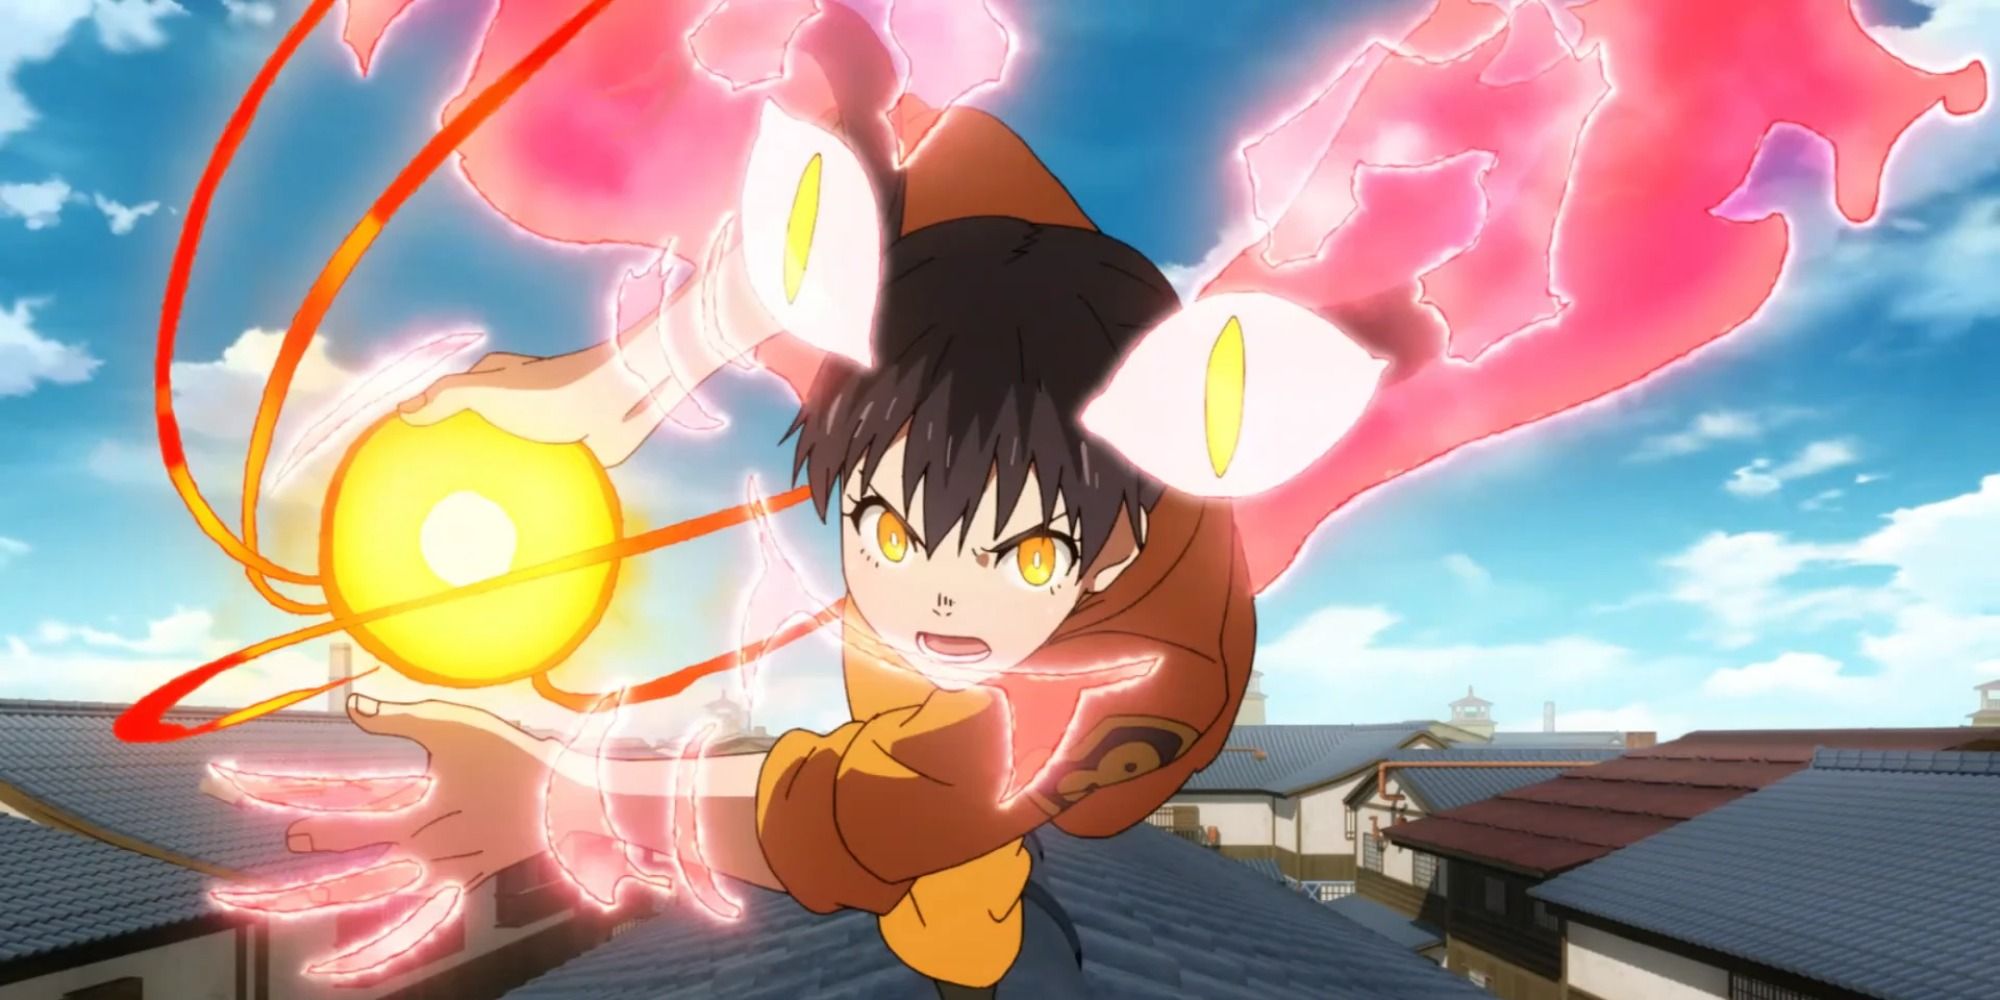 tamaki's pyrokinetic ability